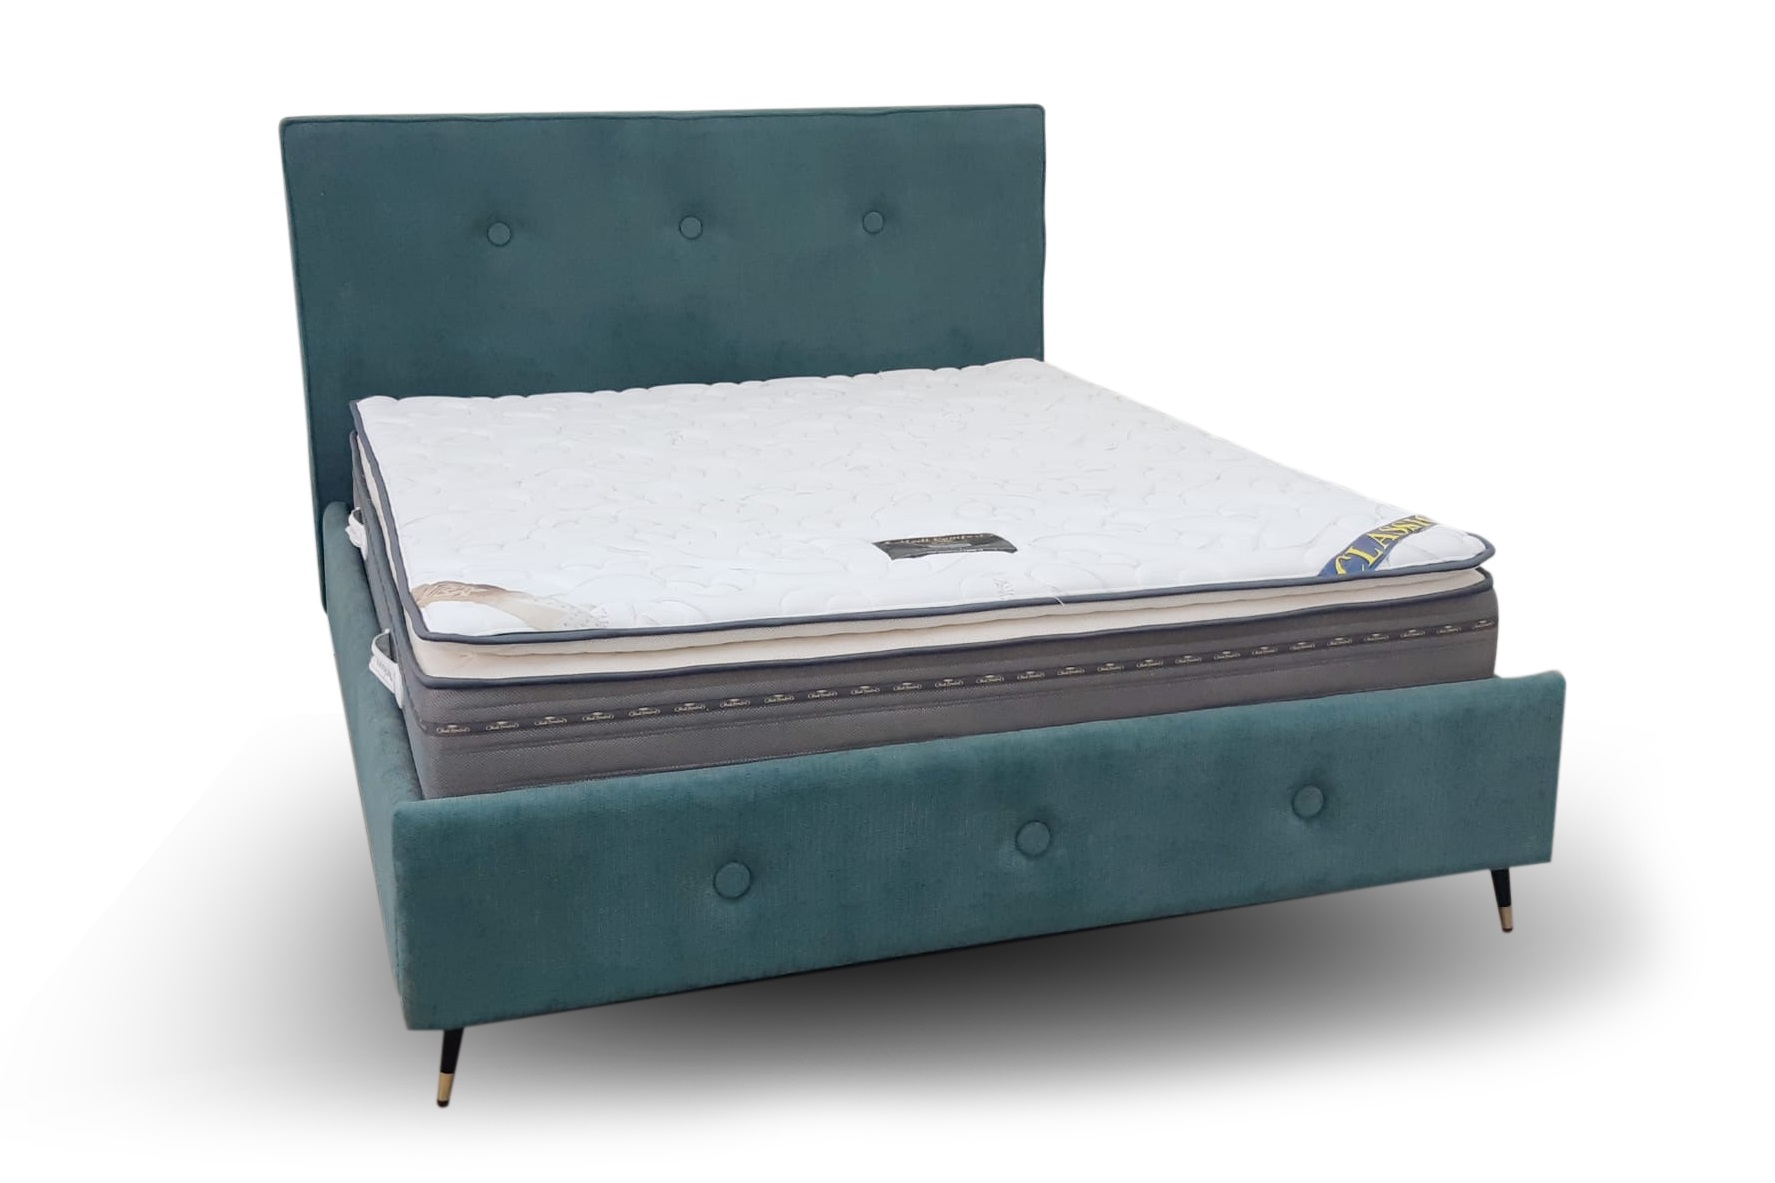 מיטה זוגית מרופדת דגם אוראל